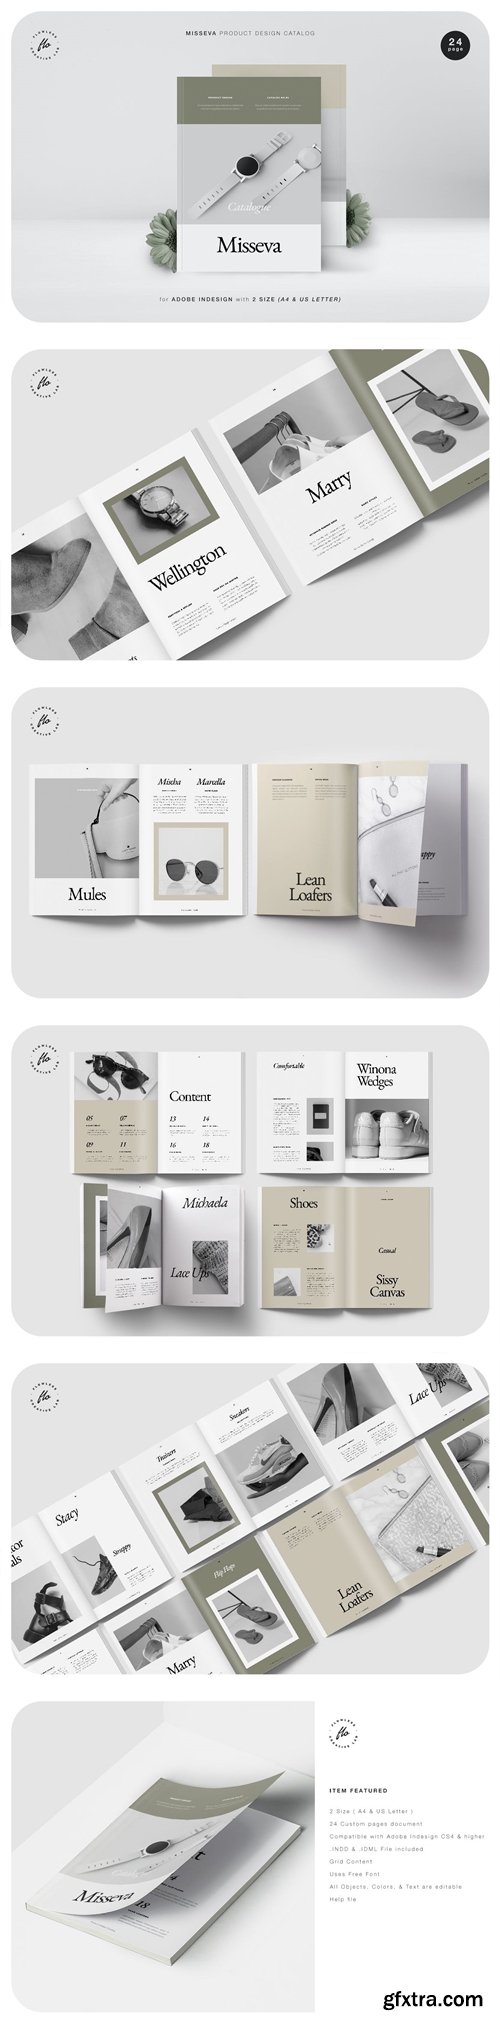 Misseva Product Design Catalog